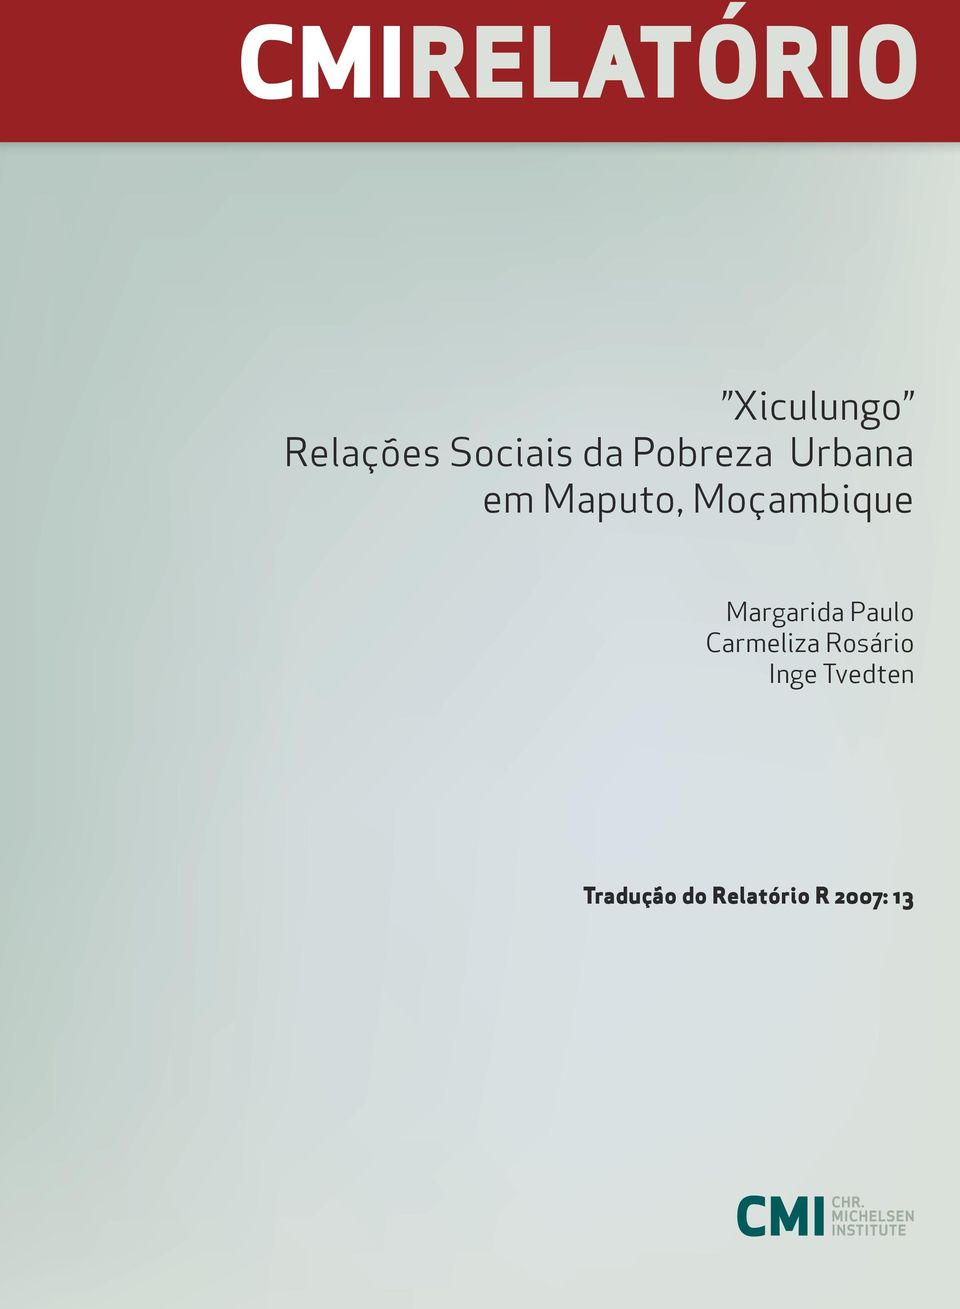 Margarida Paulo Carmeliza Rosário Inge